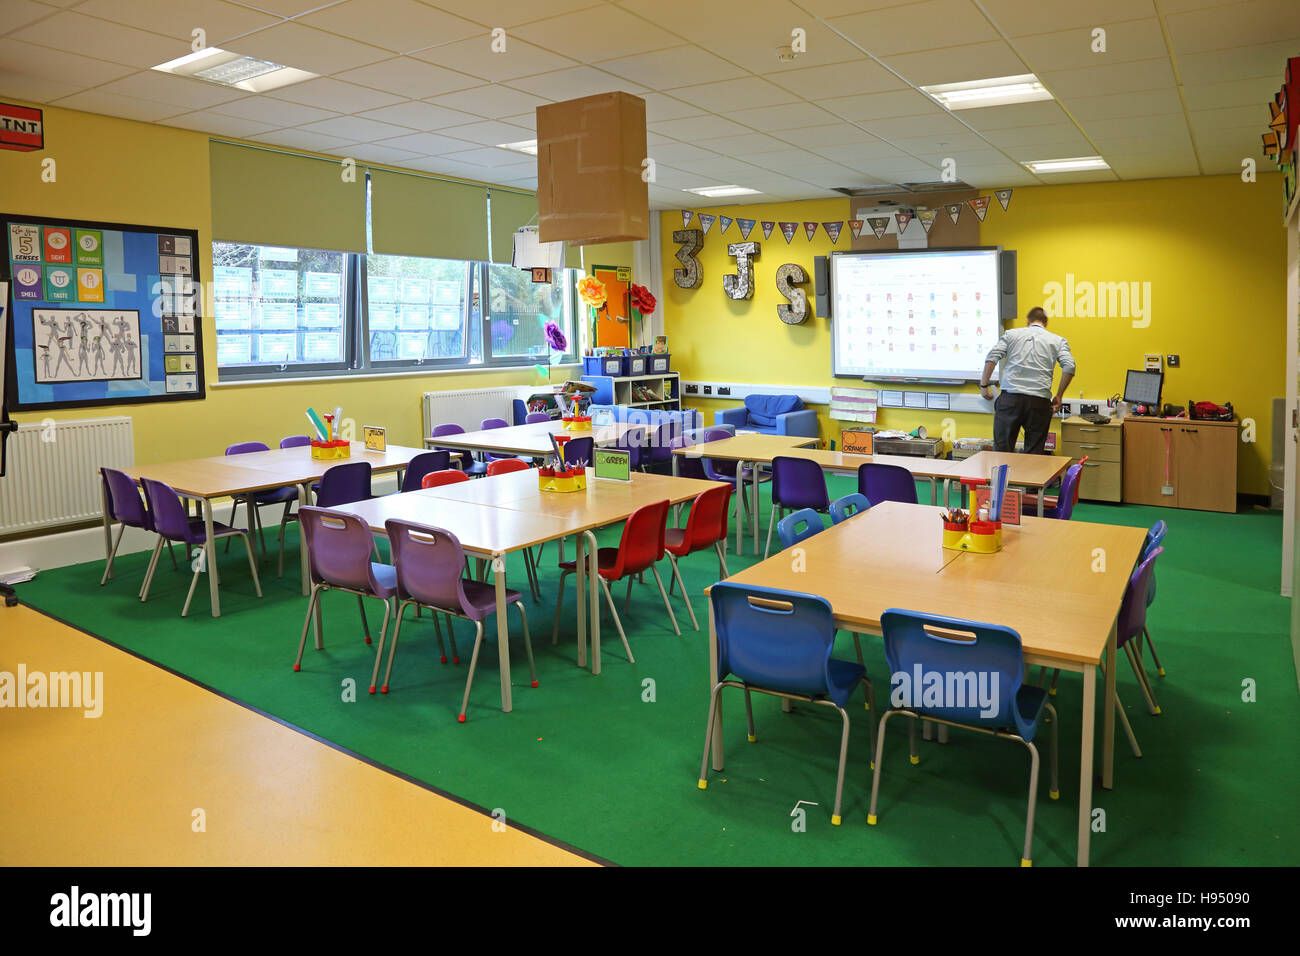 Innenansicht einer modernen Jahr 1 Schulklasse mit Tischen, Stühlen und Kunstwerke an Wänden in leuchtenden Farben. Lehrer zeigt. Stockfoto